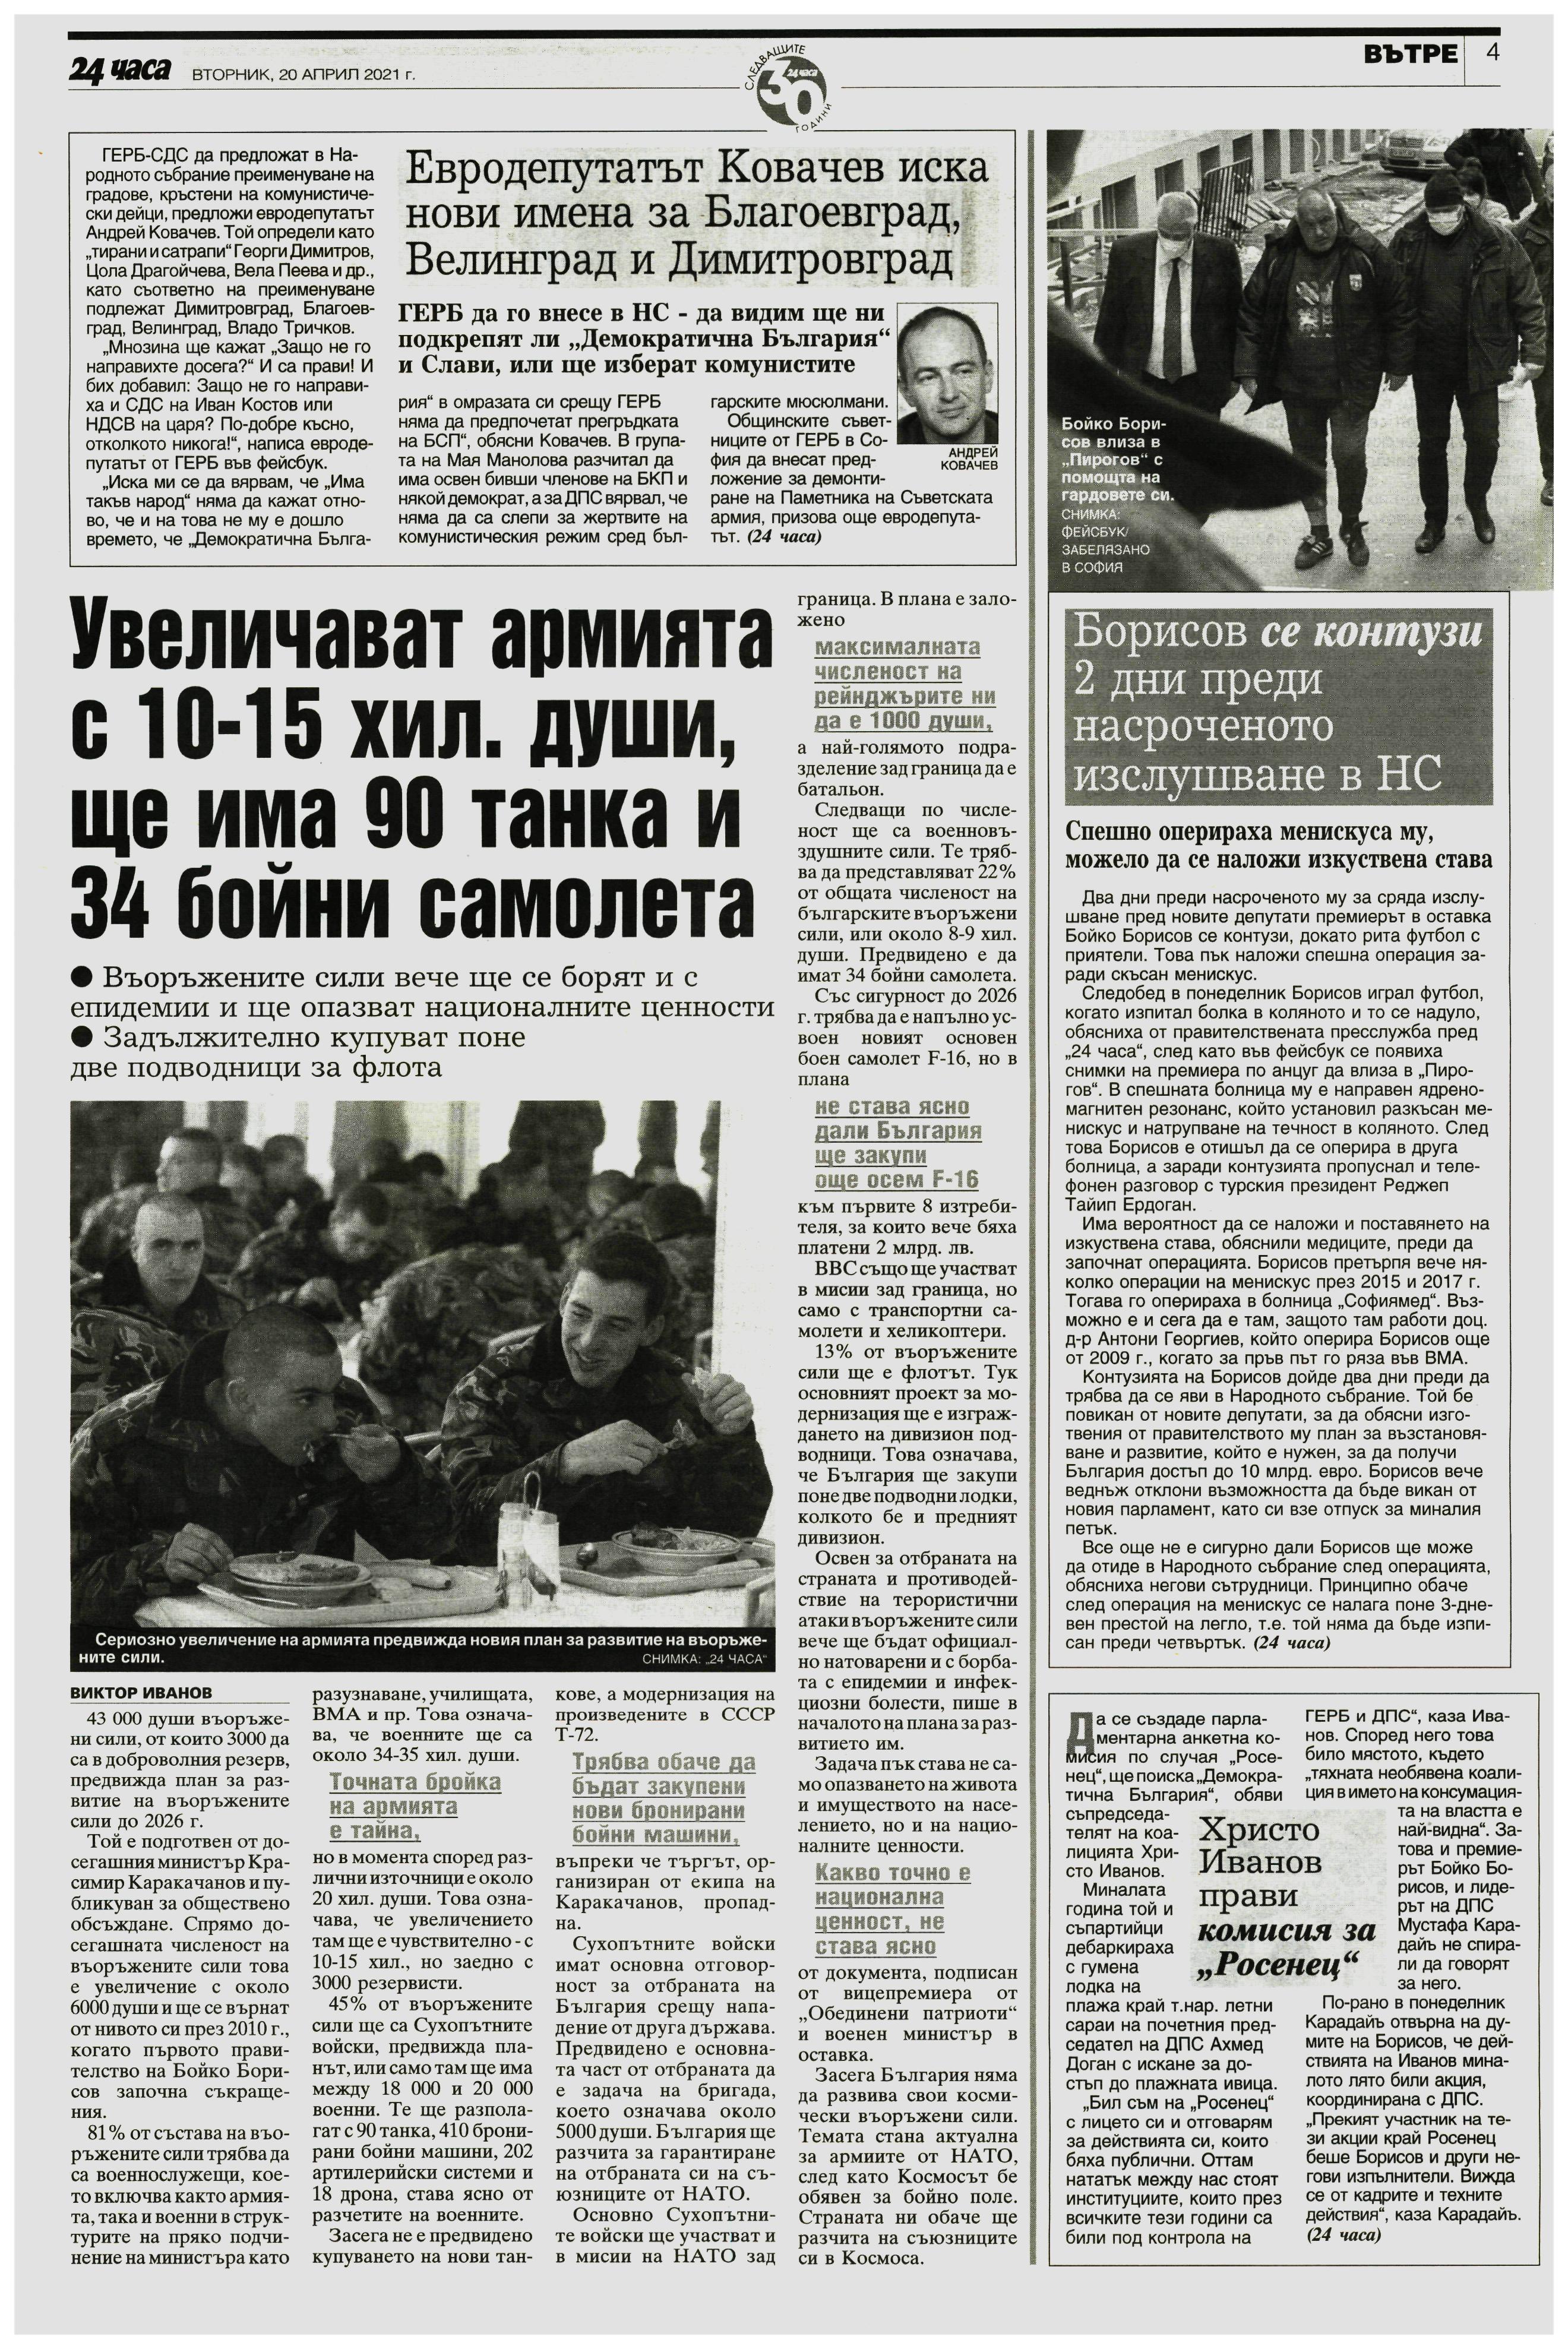 Борисов се контузи 2 дни преди насроченото изслушване в НС